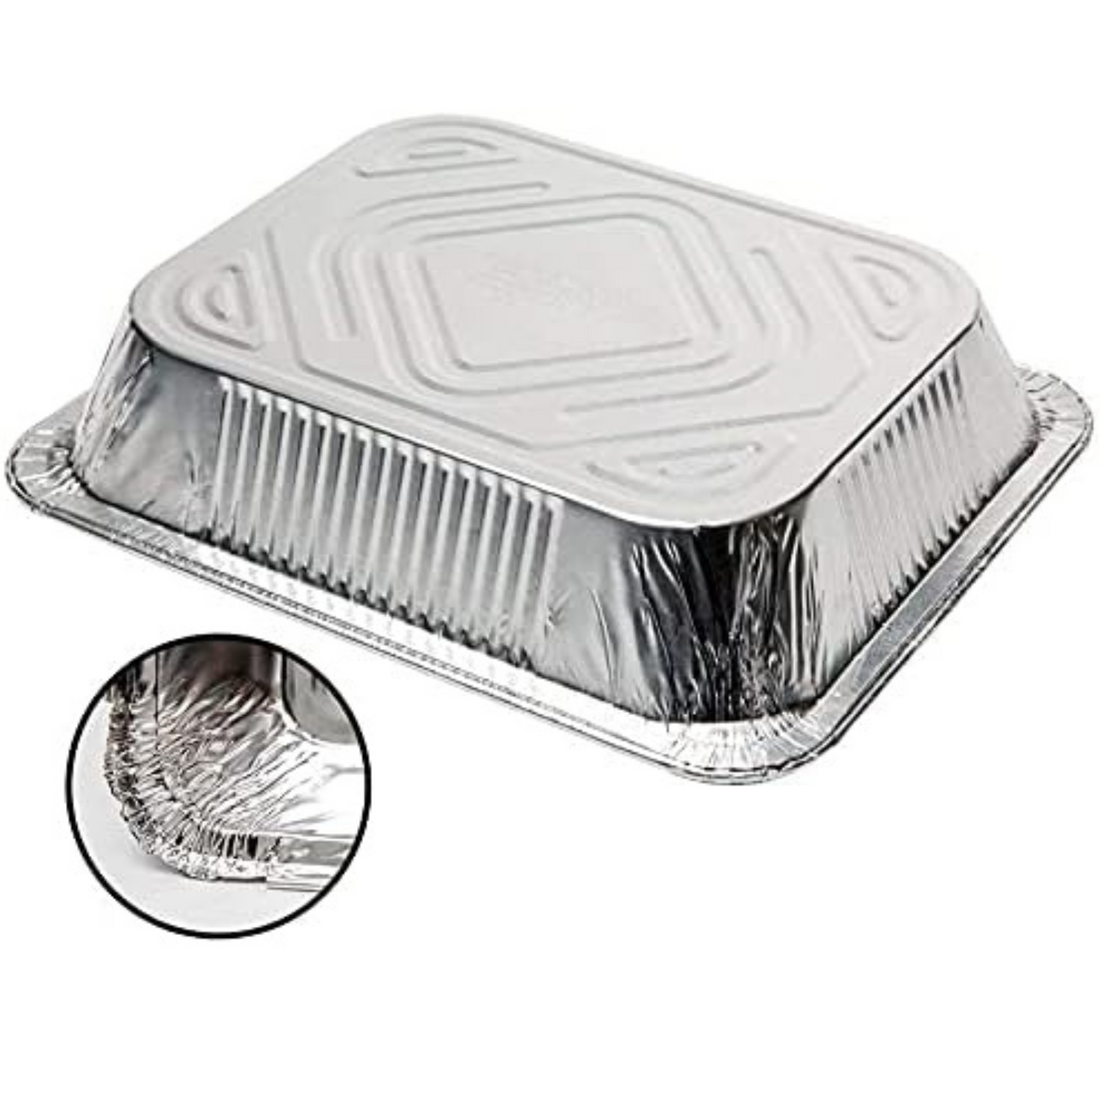 VeZee' JETfoil Disposable Aluminum 9" x 13" Reg Half Size Aluminum Pans Without Lids Pack of 10 - image 3 of 7